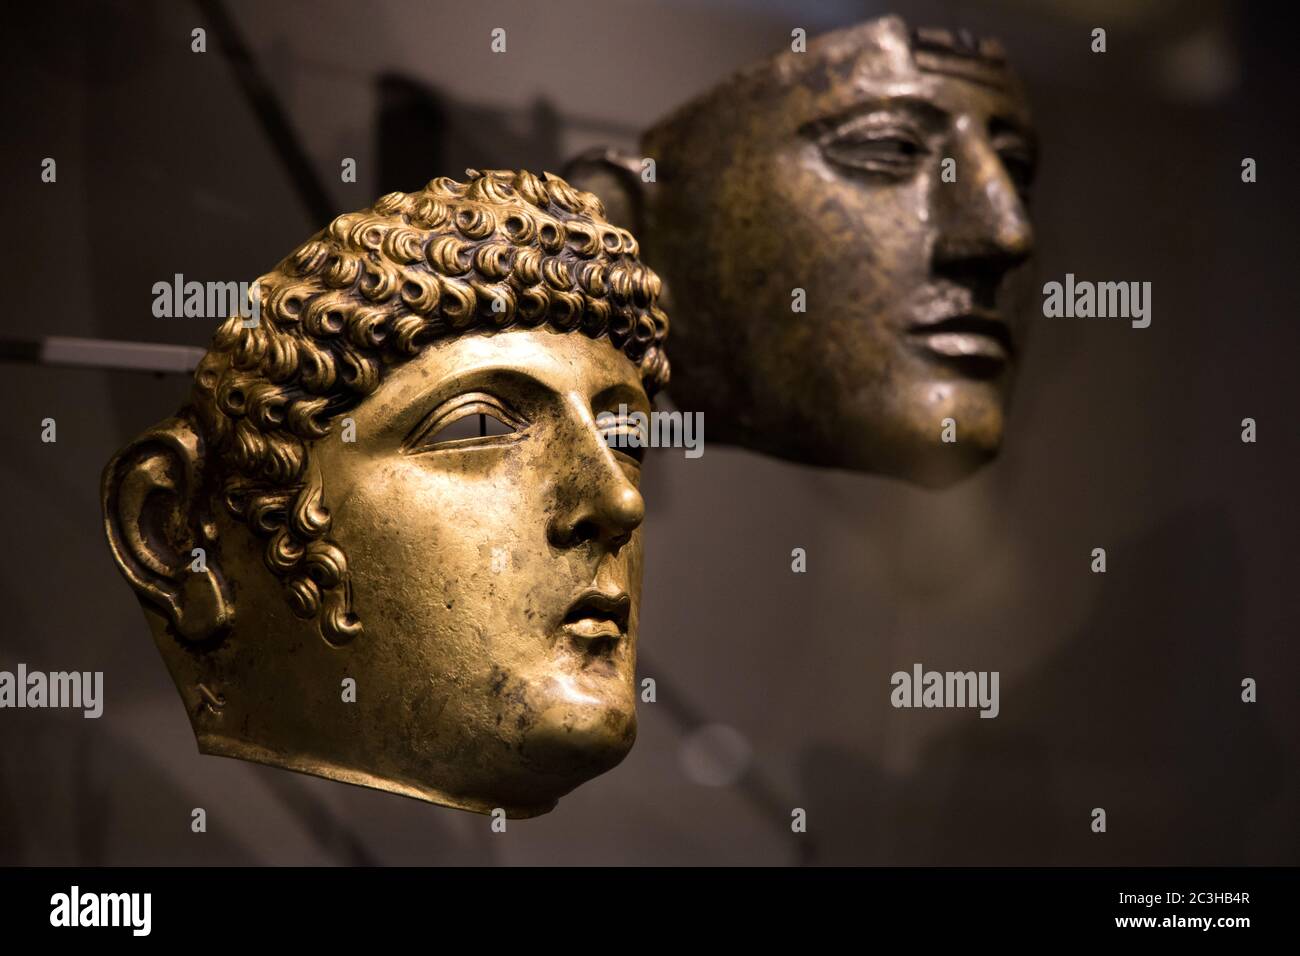 Leiden, Niederlande - 04. JAN 2020: Nahaufnahme alter Visiermasken aus dem alten Rom, gefunden in den Niederlanden. Antikes Römisches Reich. Stockfoto